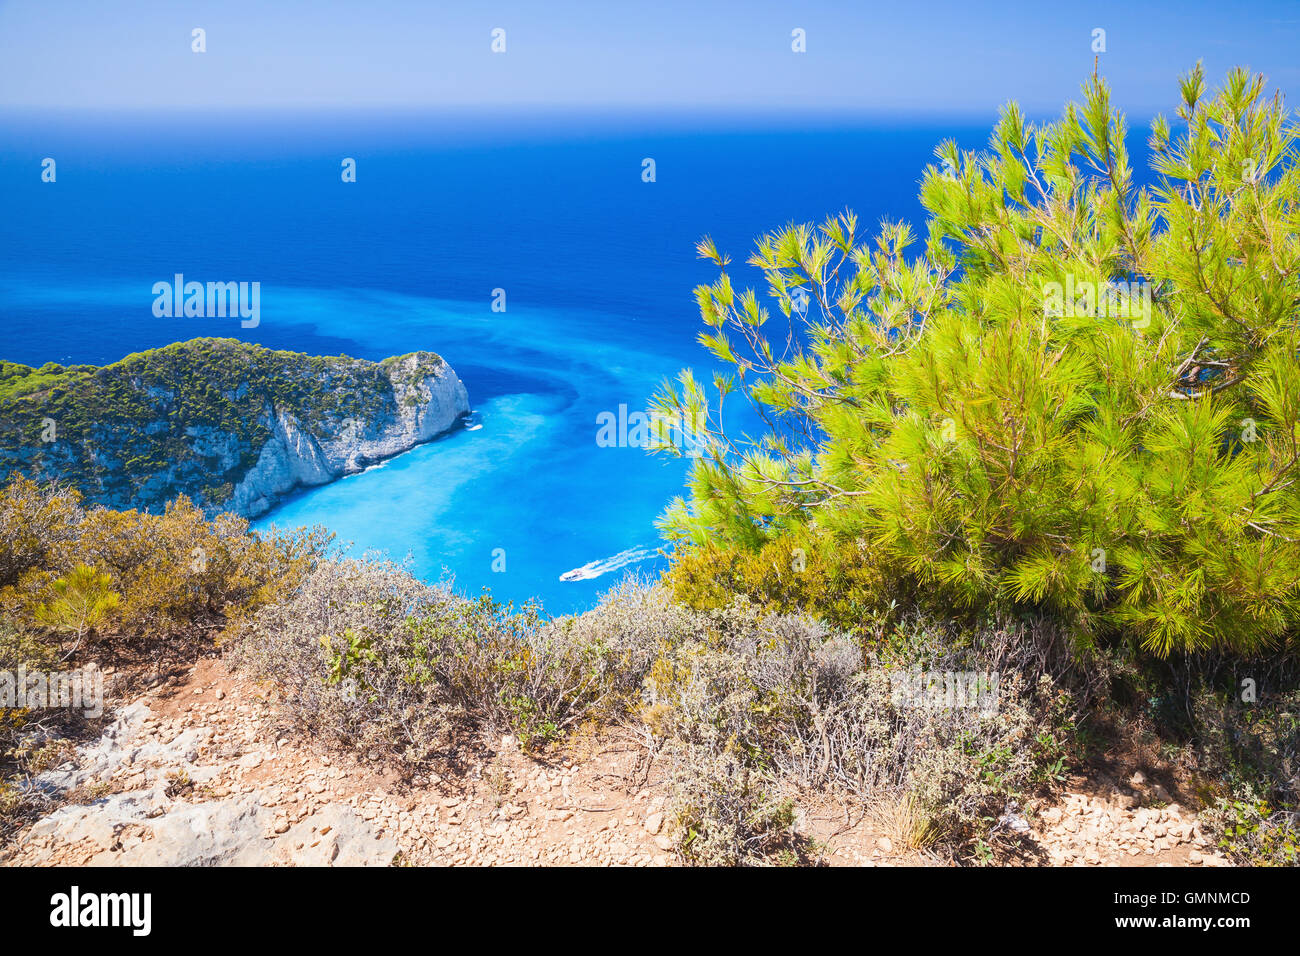 La baie de Navagio paysage côtier. Le plus célèbre monument de Zakynthos île grecque Banque D'Images